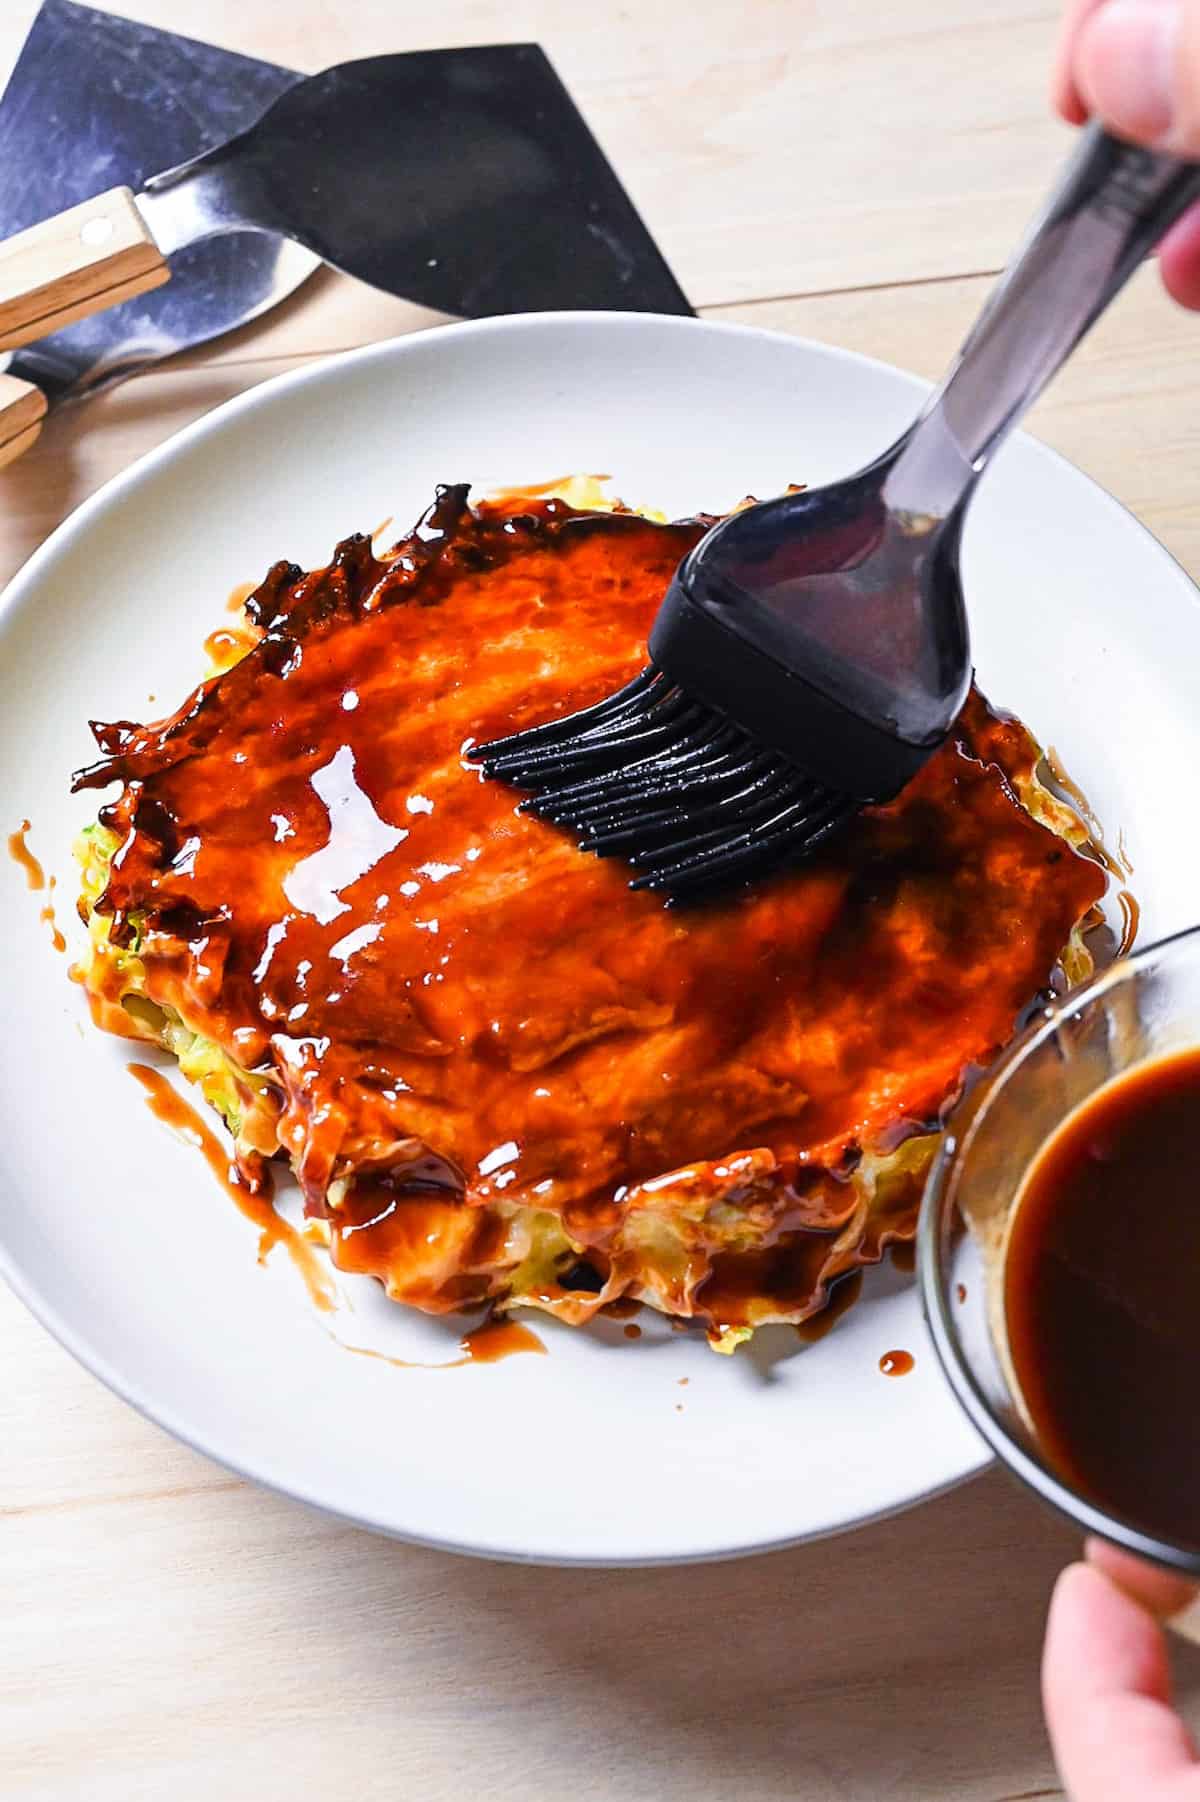 Homemade okonomiyaki sauce being brushed onto a freshly cooked okonomiyaki